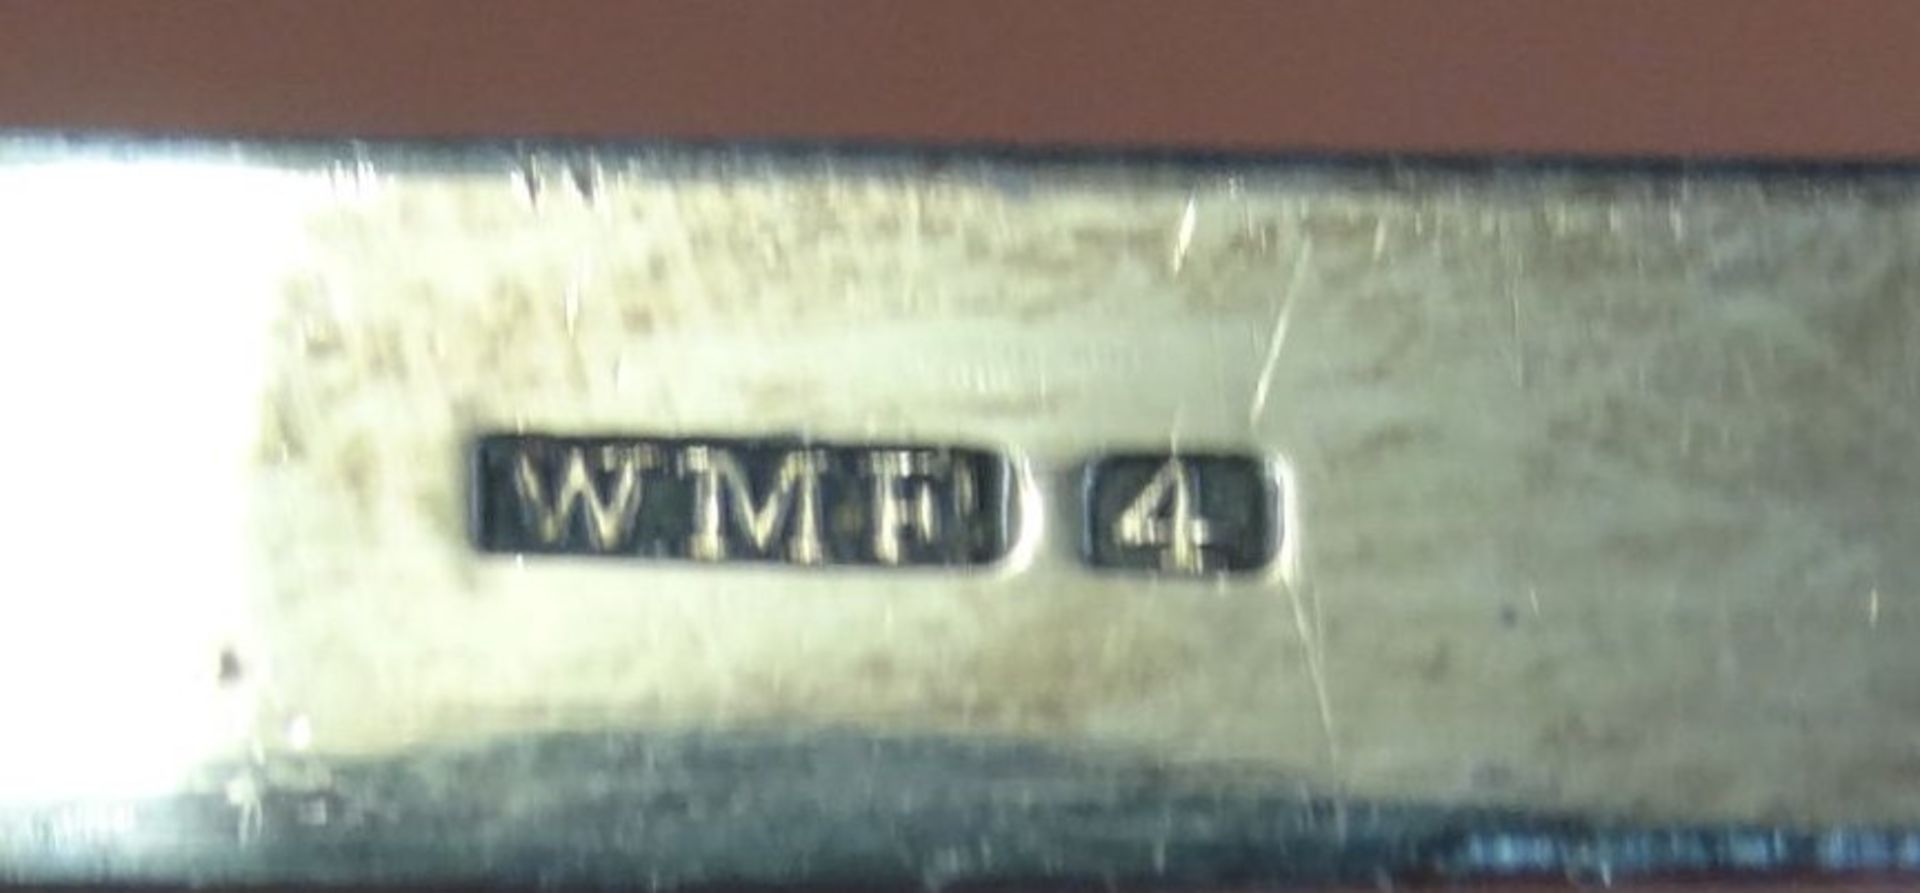 grosse, versilberte Suppenkelle "WMF", L-34 cm, guter Zustand - Bild 3 aus 3